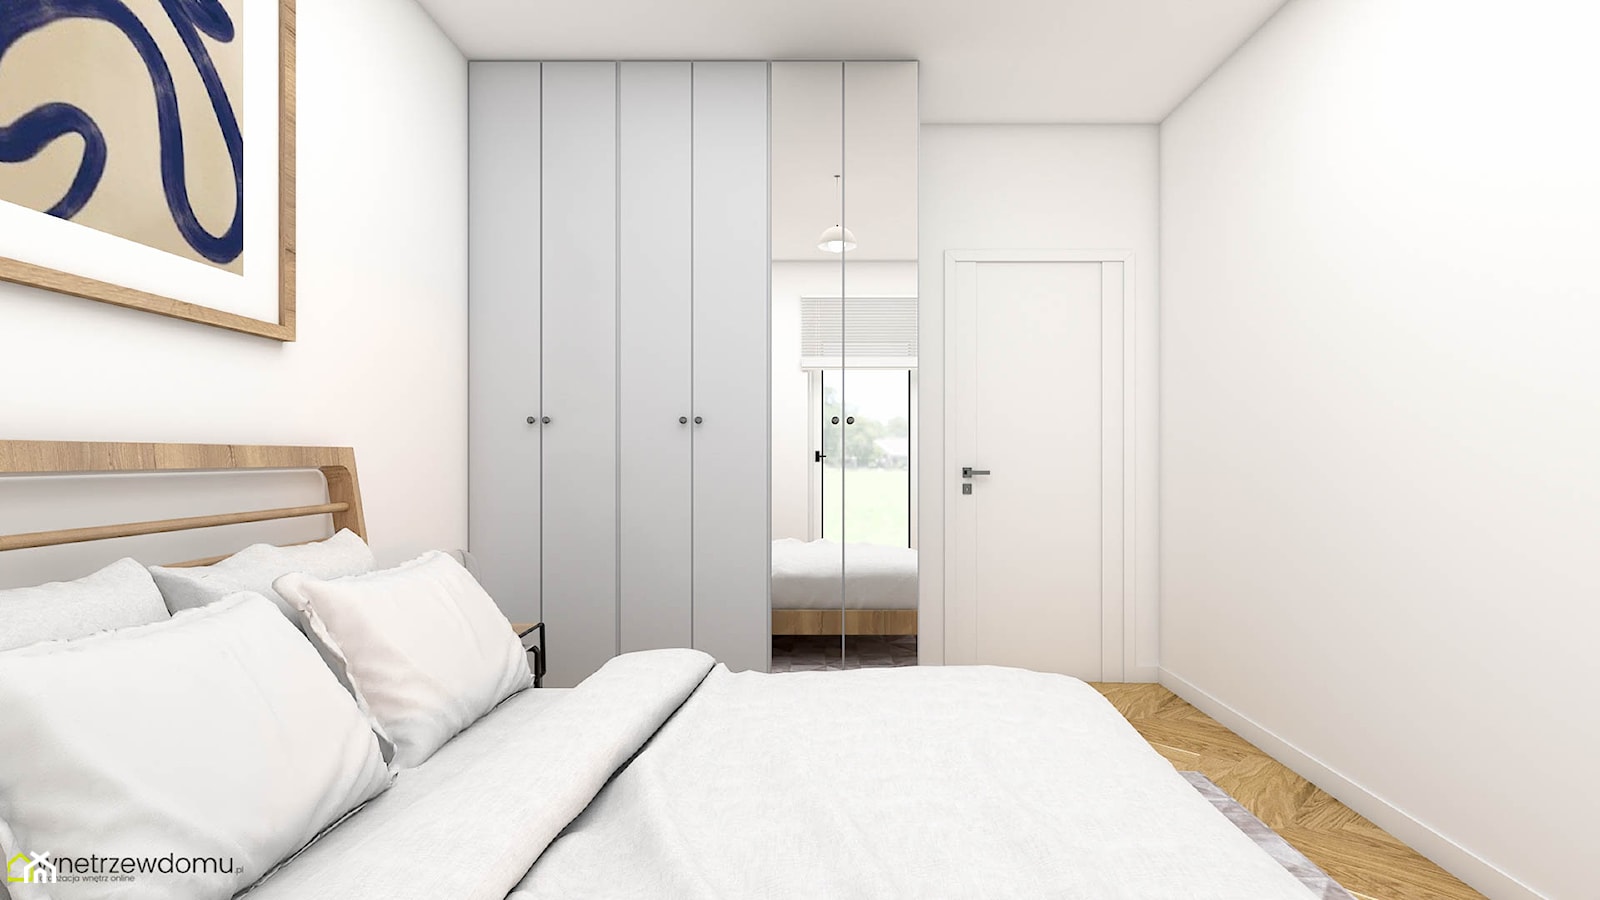 Minimalisstyczna sypialnia z drewnianym łóżkiem - zdjęcie od wnetrzewdomu - Homebook